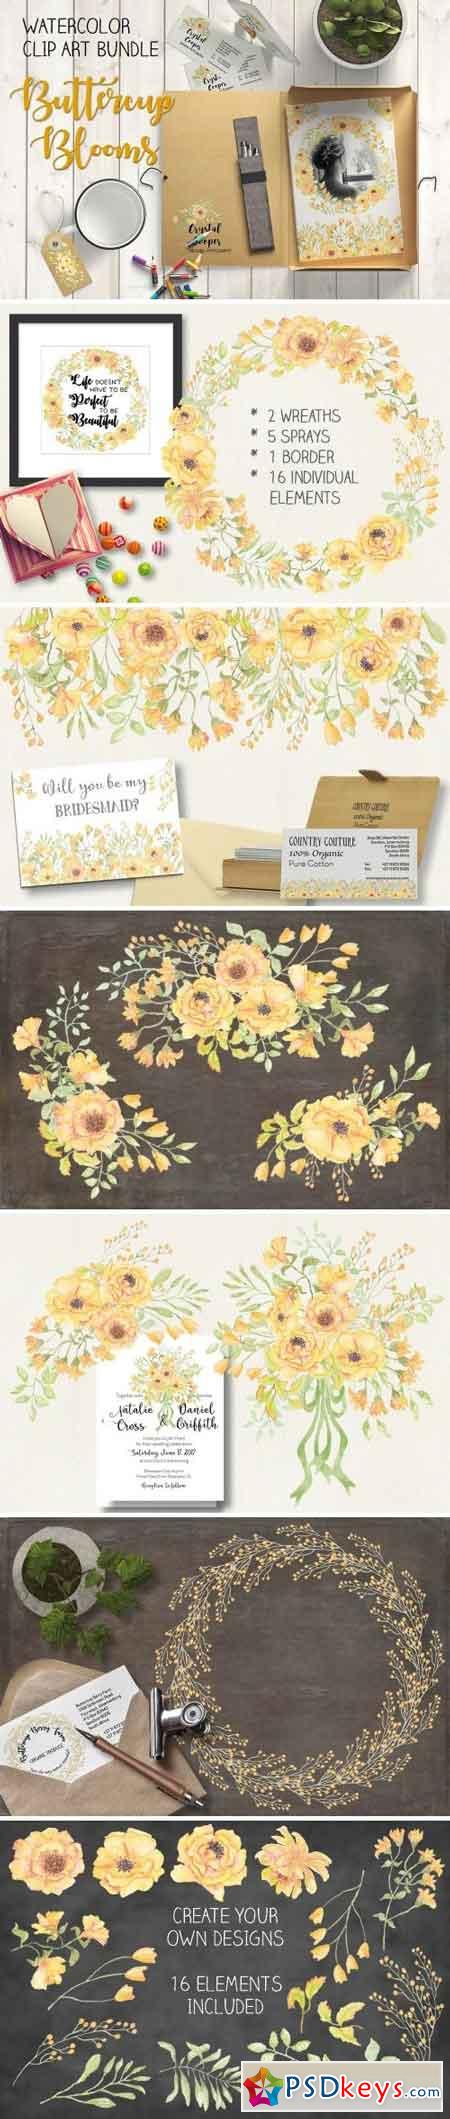 Watercolor bundlex Buttercup blooms 1581184